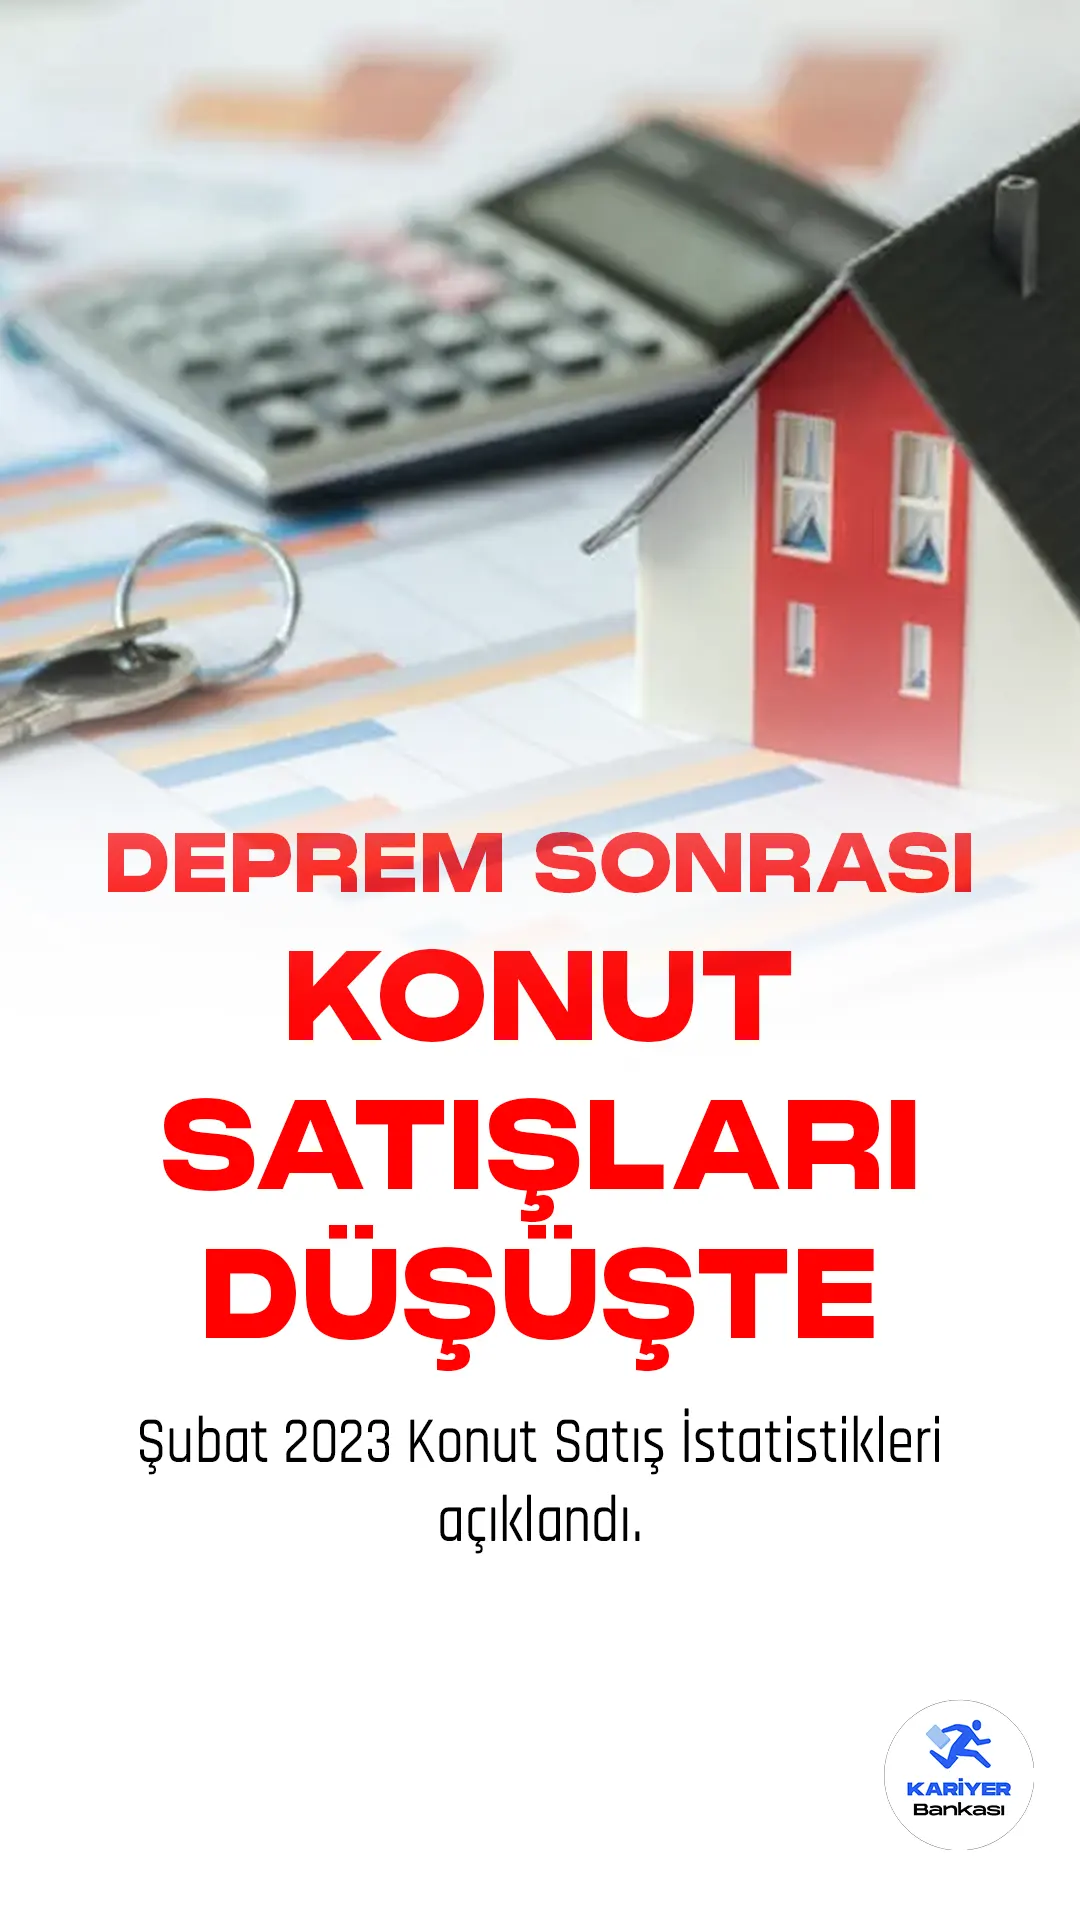 Şubat 2023 Konut Satış İstatistikleri açıklandı. Türkiye genelinde konut satışları bir önceki yılın aynı ayına göre %18,0 azalarak 80 bin 31 oldu.